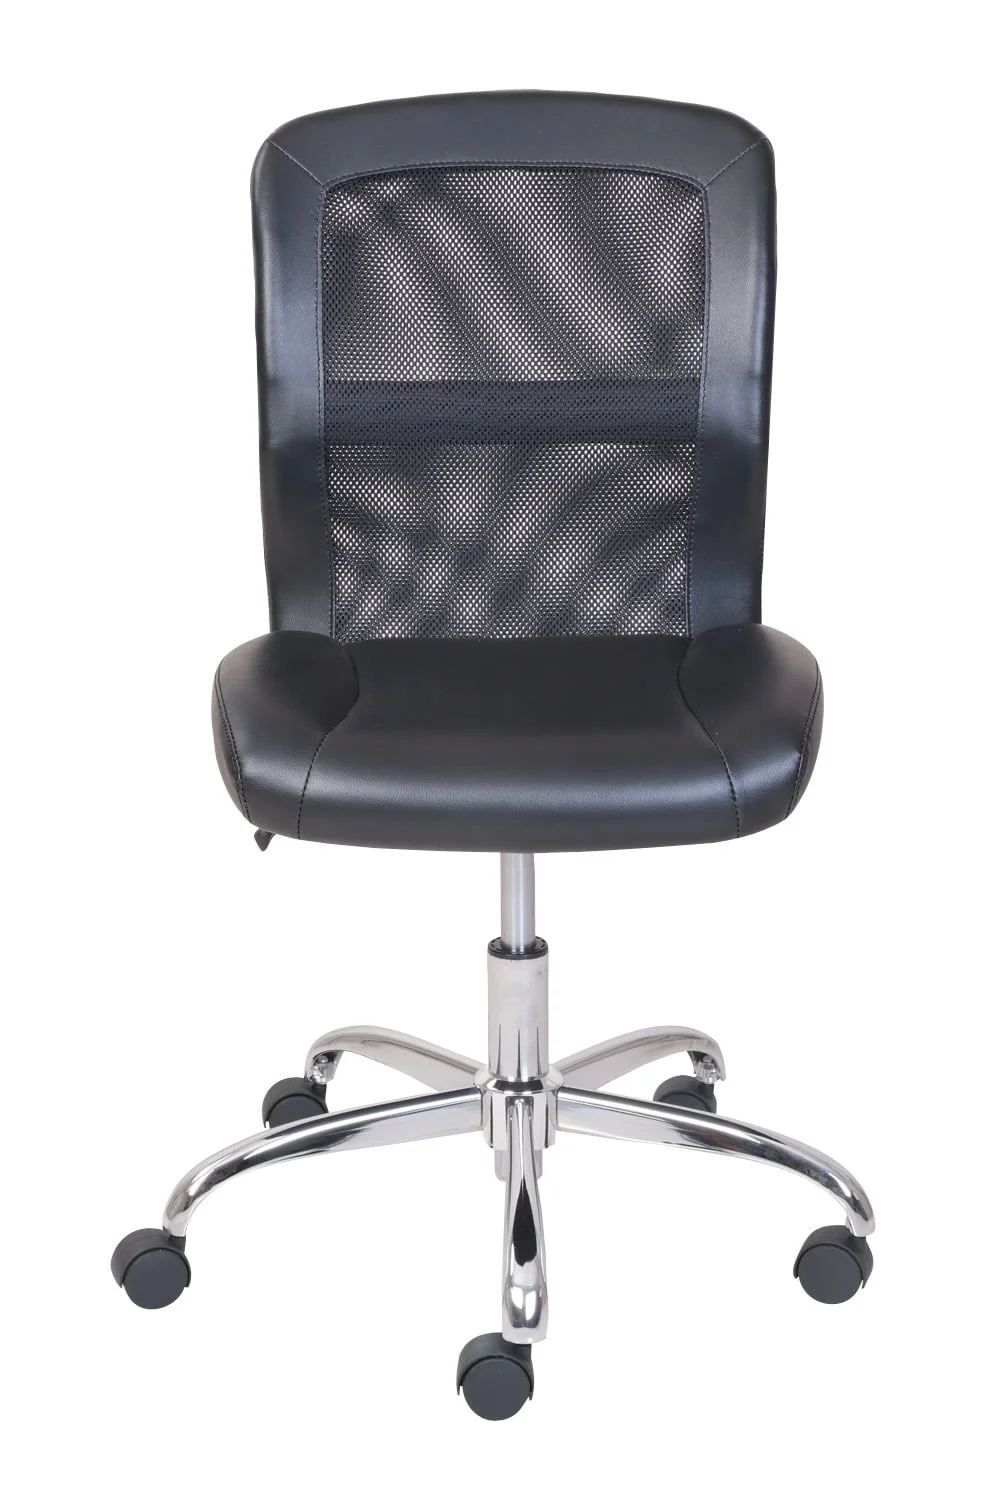 כנס כסאות אמצע הגב, ויניל, רשת המשימה הכיסא במשרד, שחור - 4